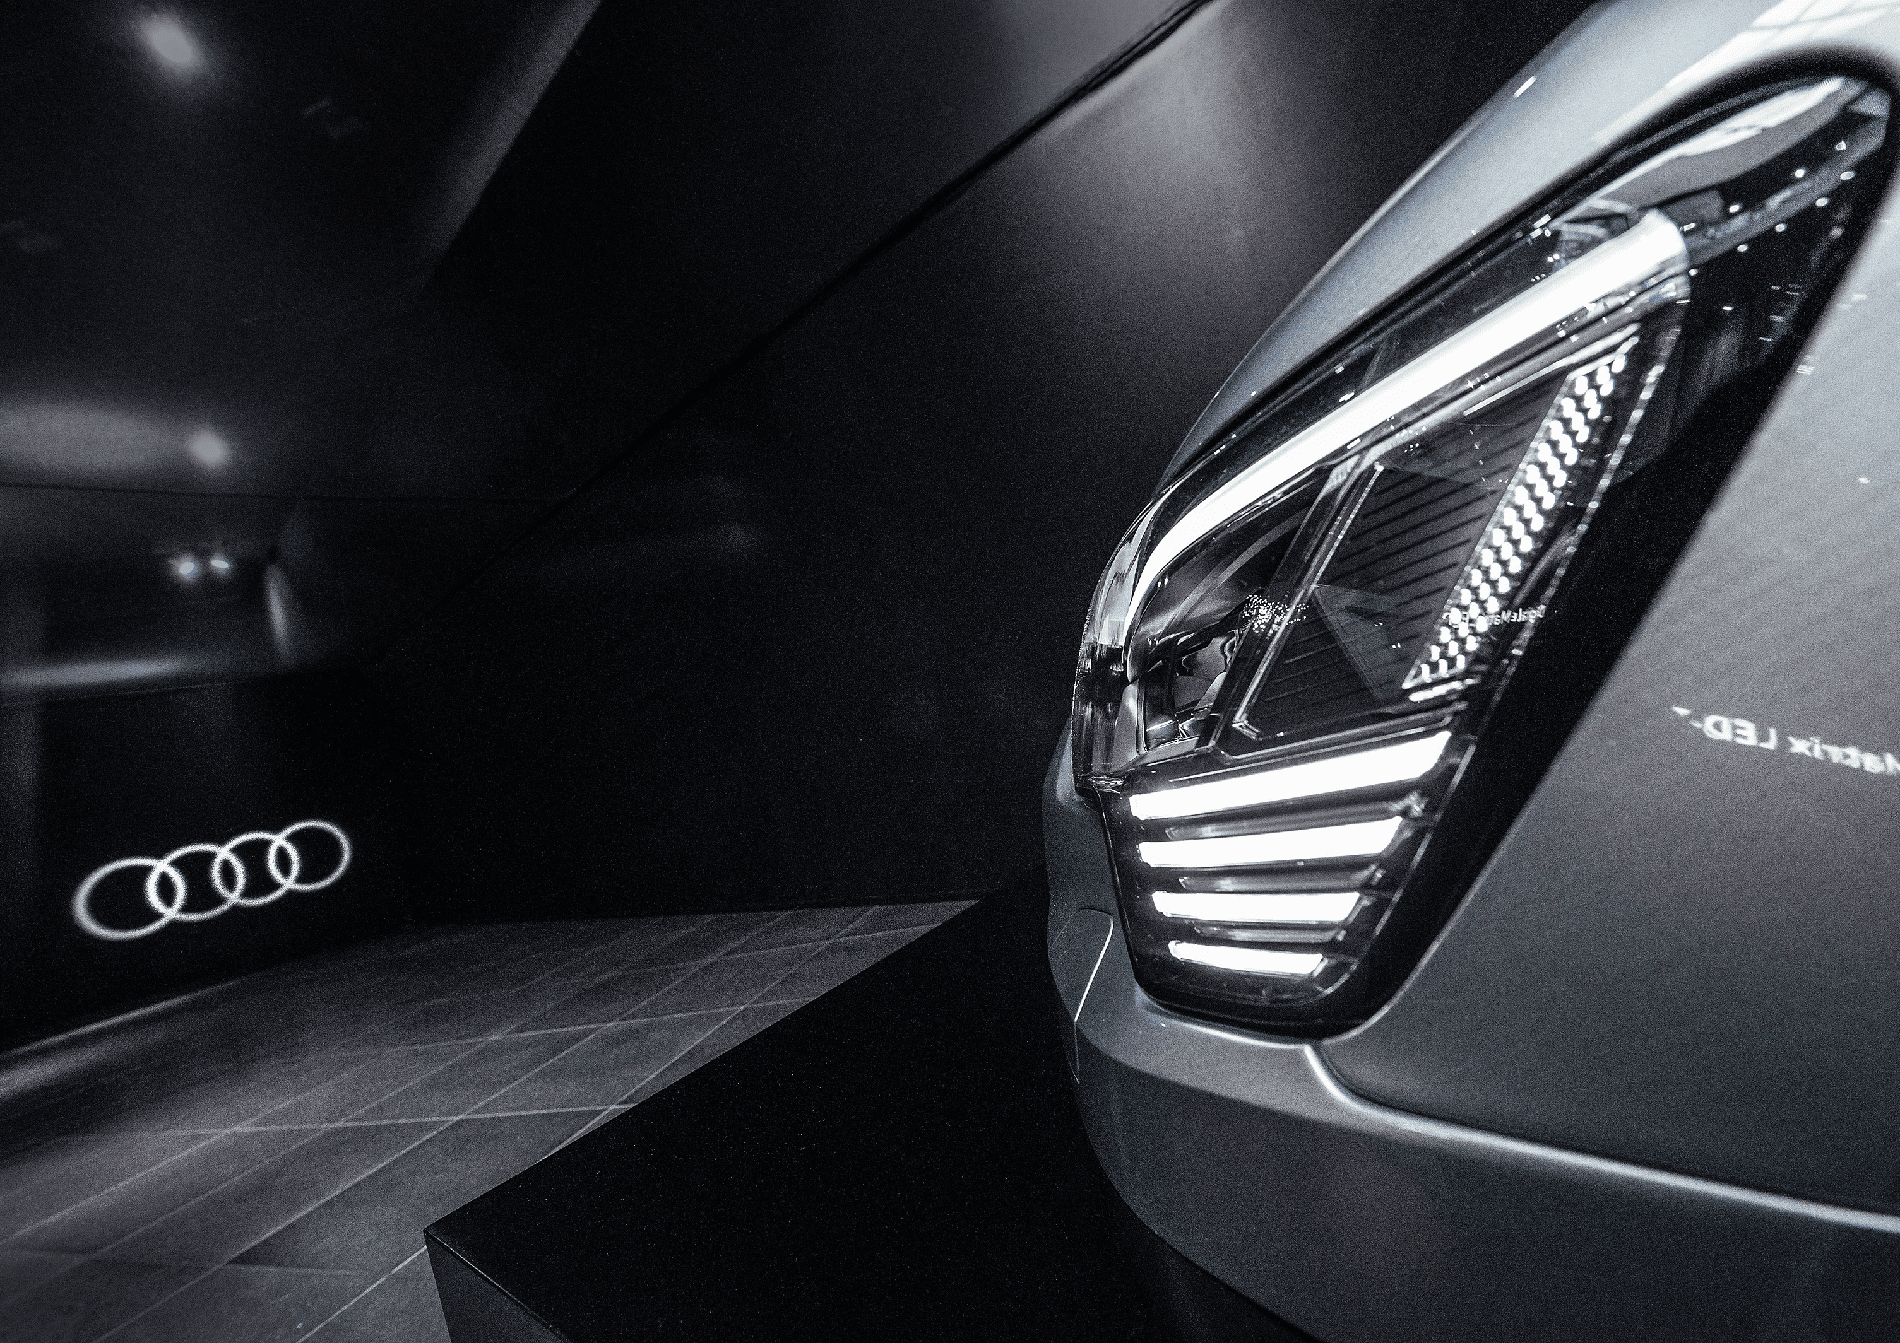 Audi viser lysets historie i bilindustrien på særudstilling – se videolink